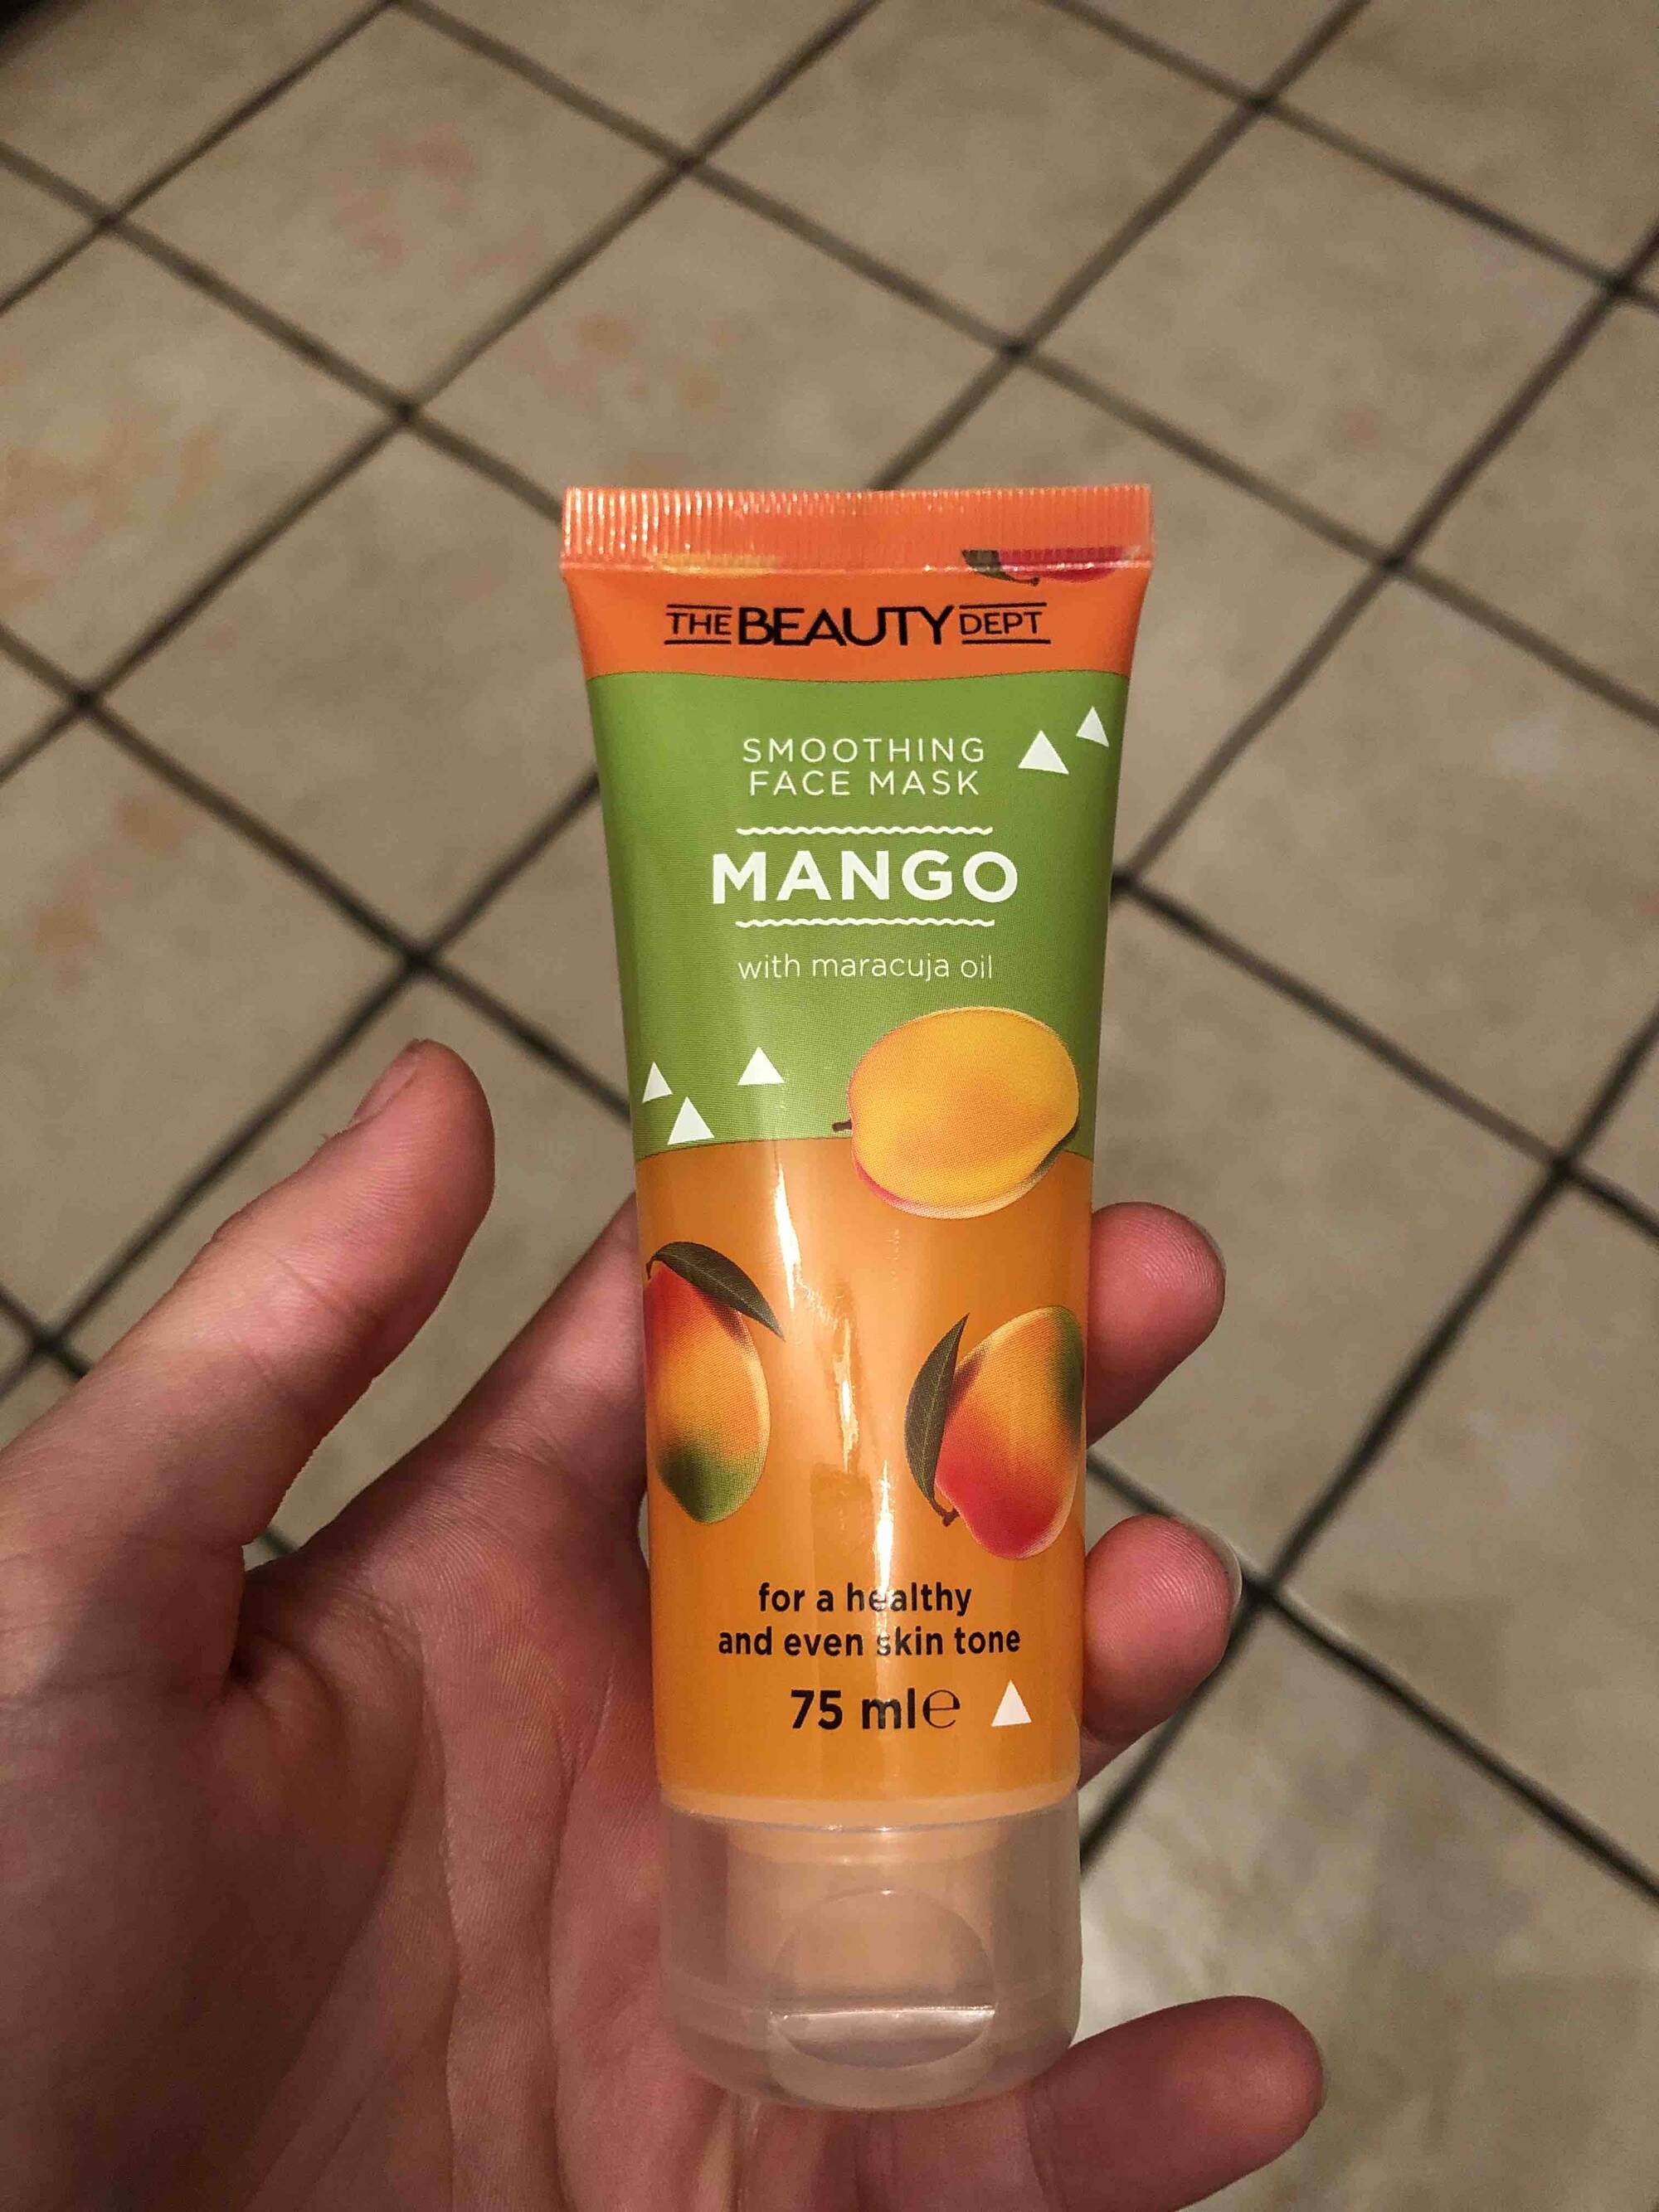 THE BEAUTY DEPT - Mango - Smoothing face mask